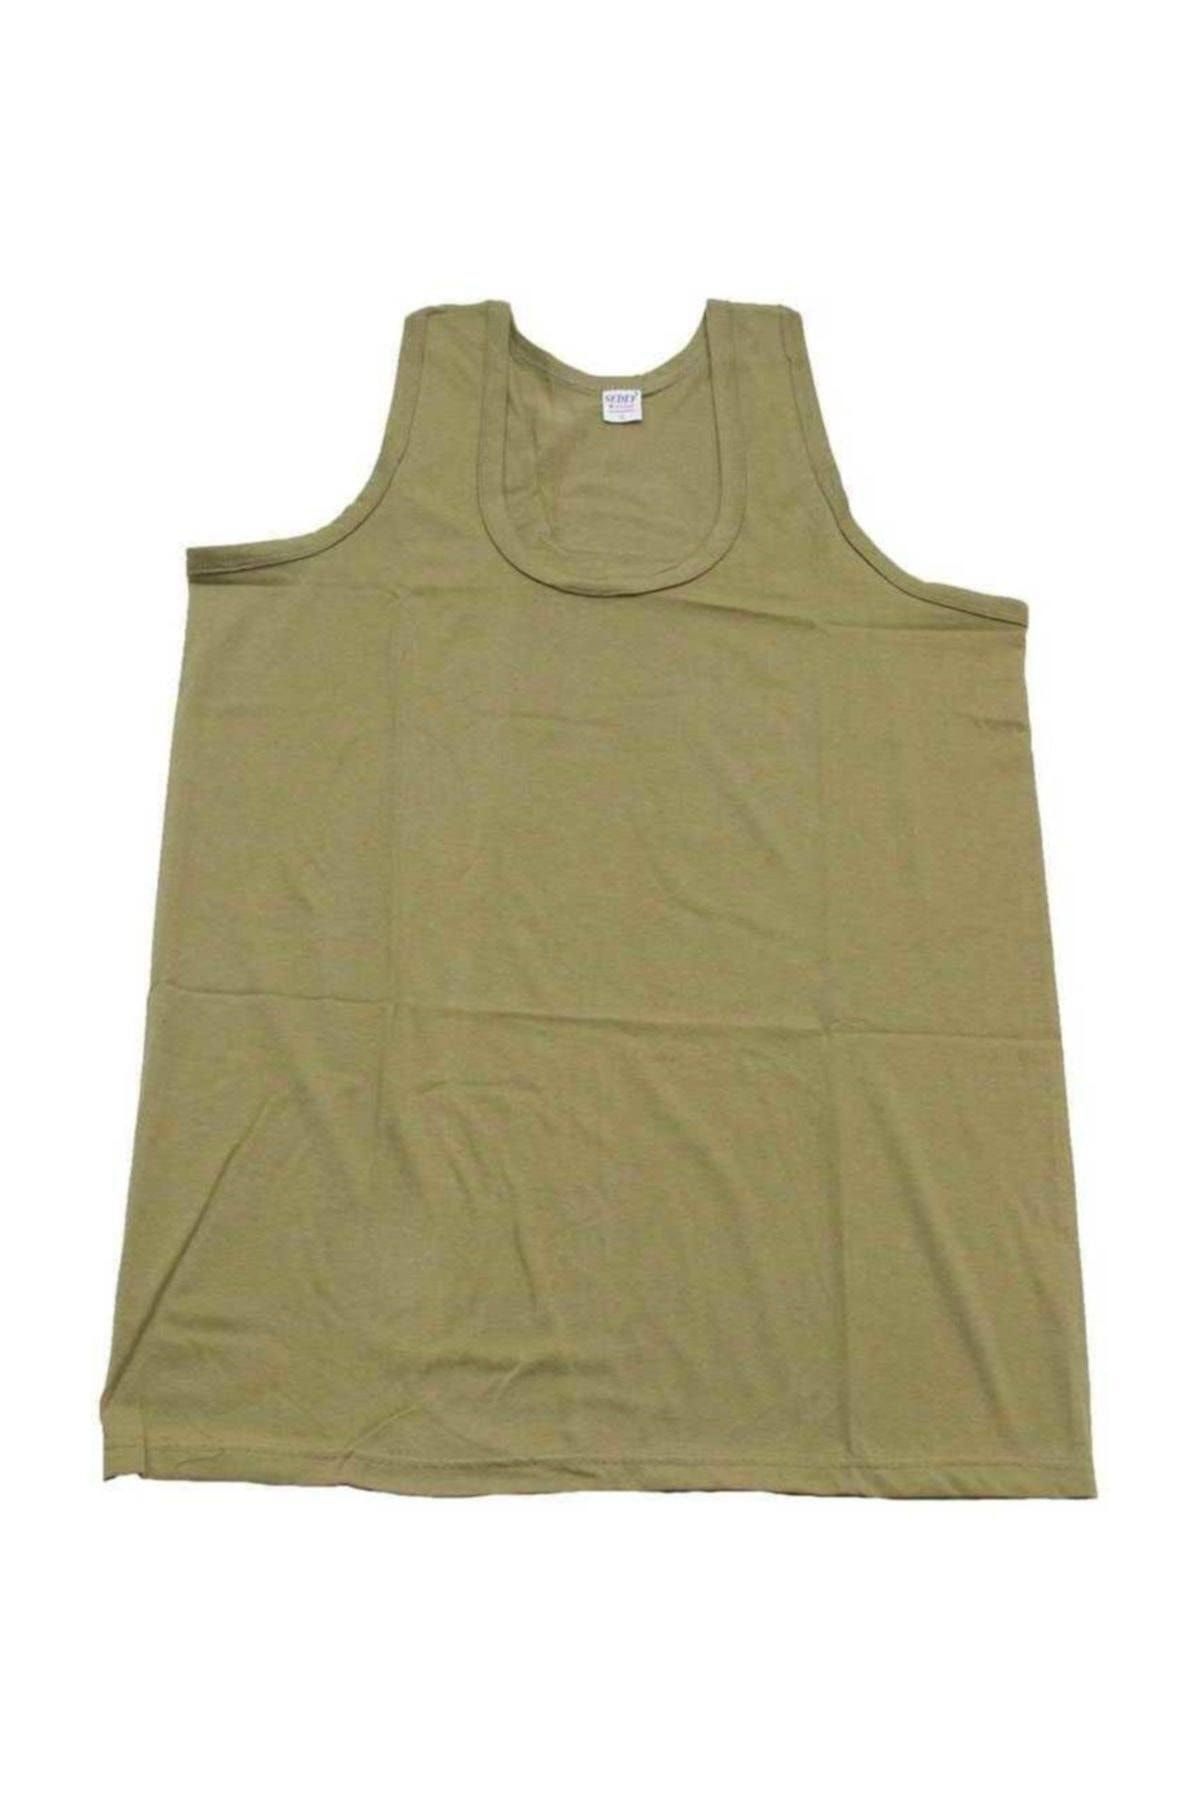 Sedef Erkek Asker Yeşil Çamaşır Seti 3'lü Paket